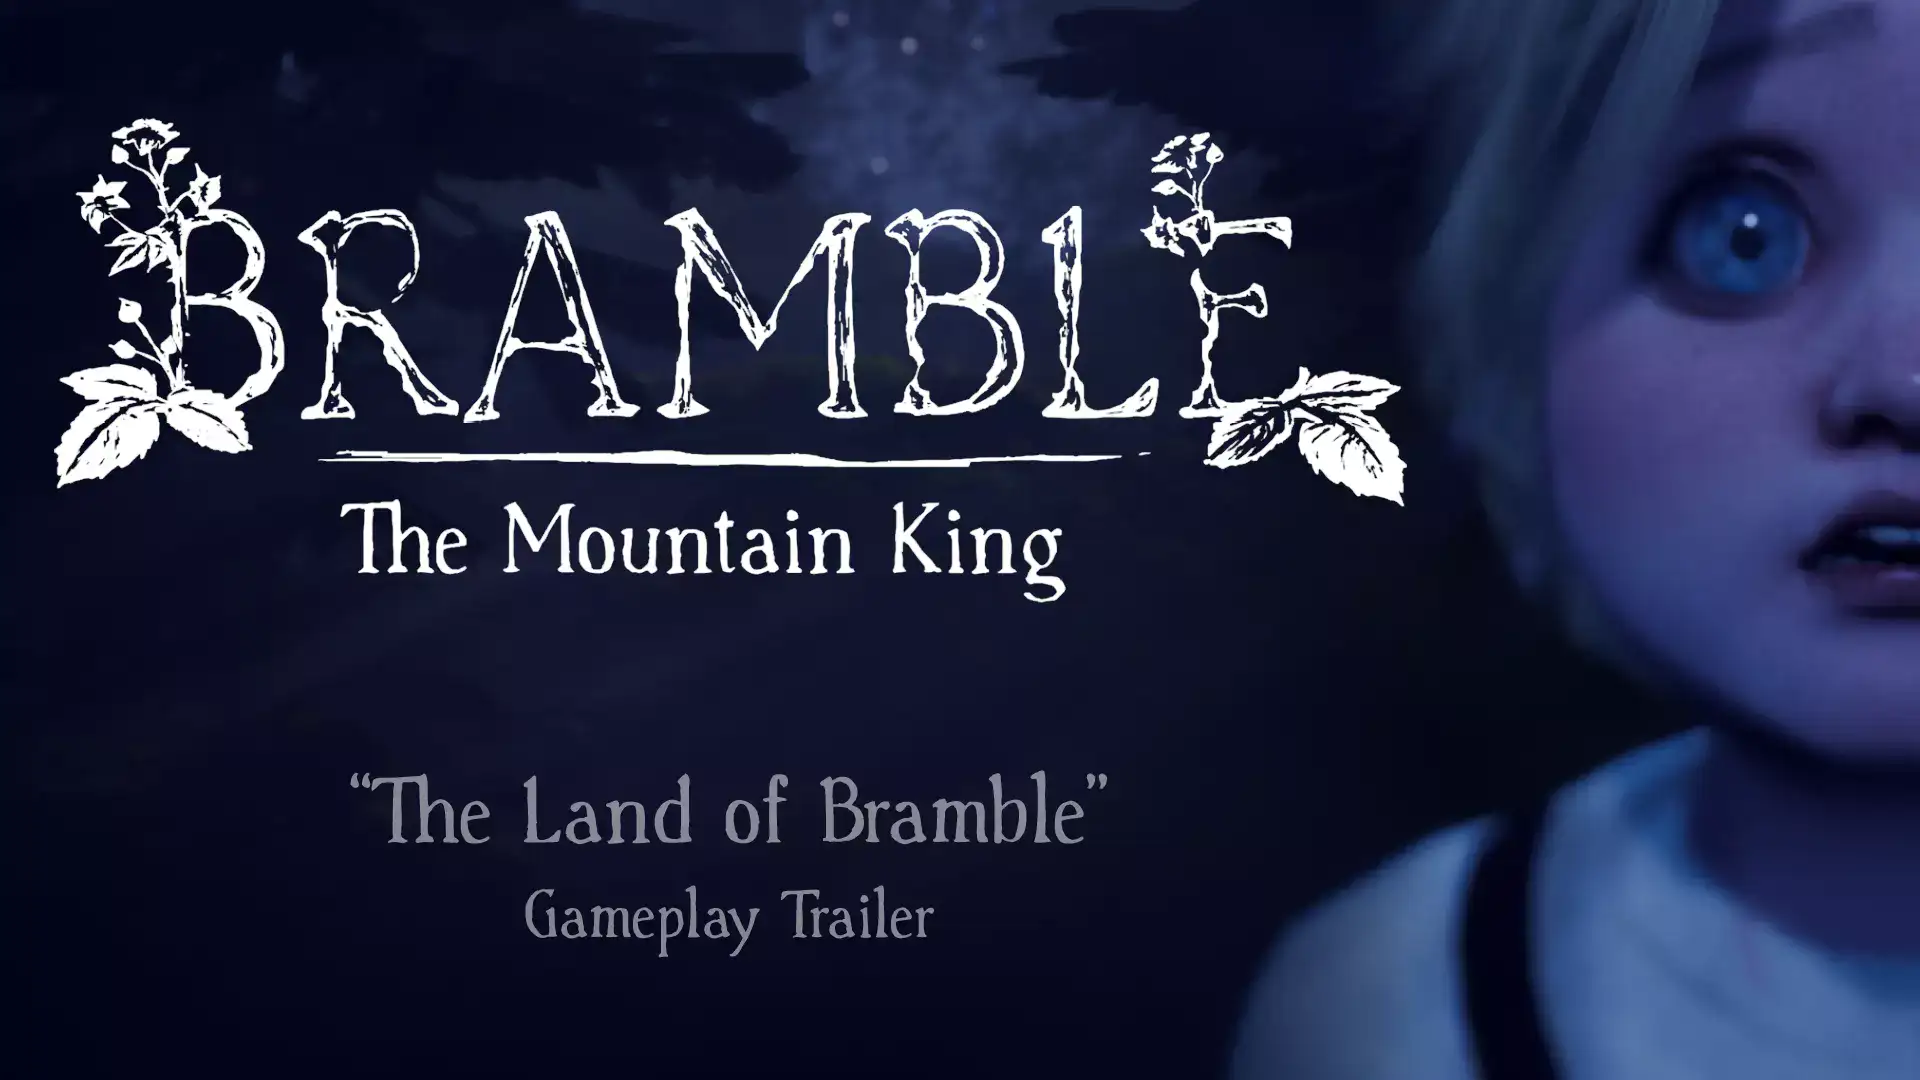 - Studio Bramble Dimfrost